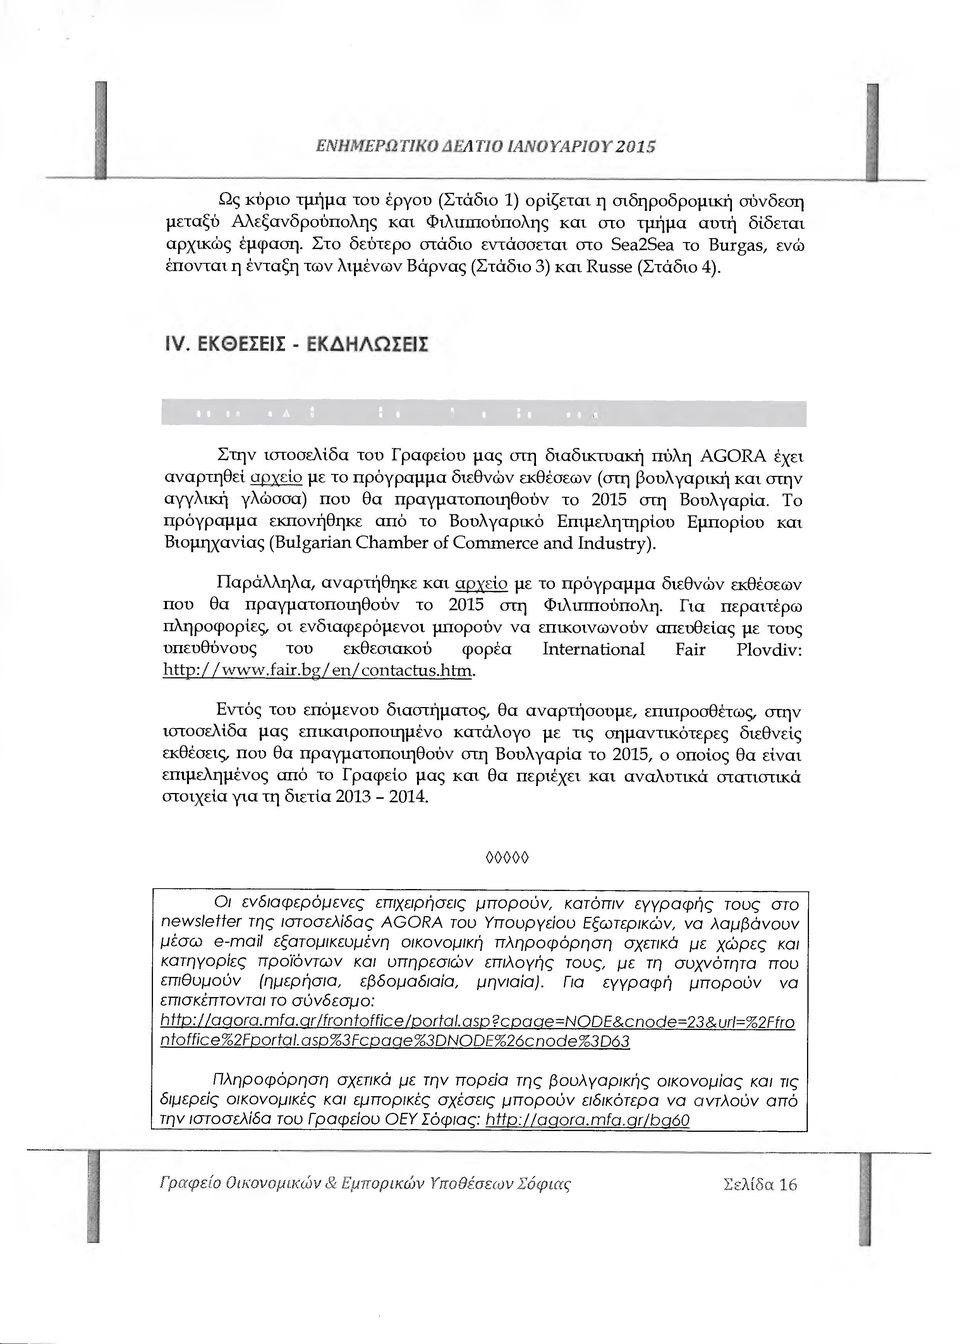 ΕΚΘΕΣΕΙΣ - ΕΚ ΗΛΩΣΕΙΣ Πρόγραµµα ιεθνών Εκθέσεων 2015 στη Βουλγαρία Στην ιστοσελίδα του Γραφείου µας υ ιη διαδικτυακή πύλη AGORA έχει αναρτηθεί αρχείο µε το πρόγραµµα διεθνών εκθέσεων (στη βουλγαρική